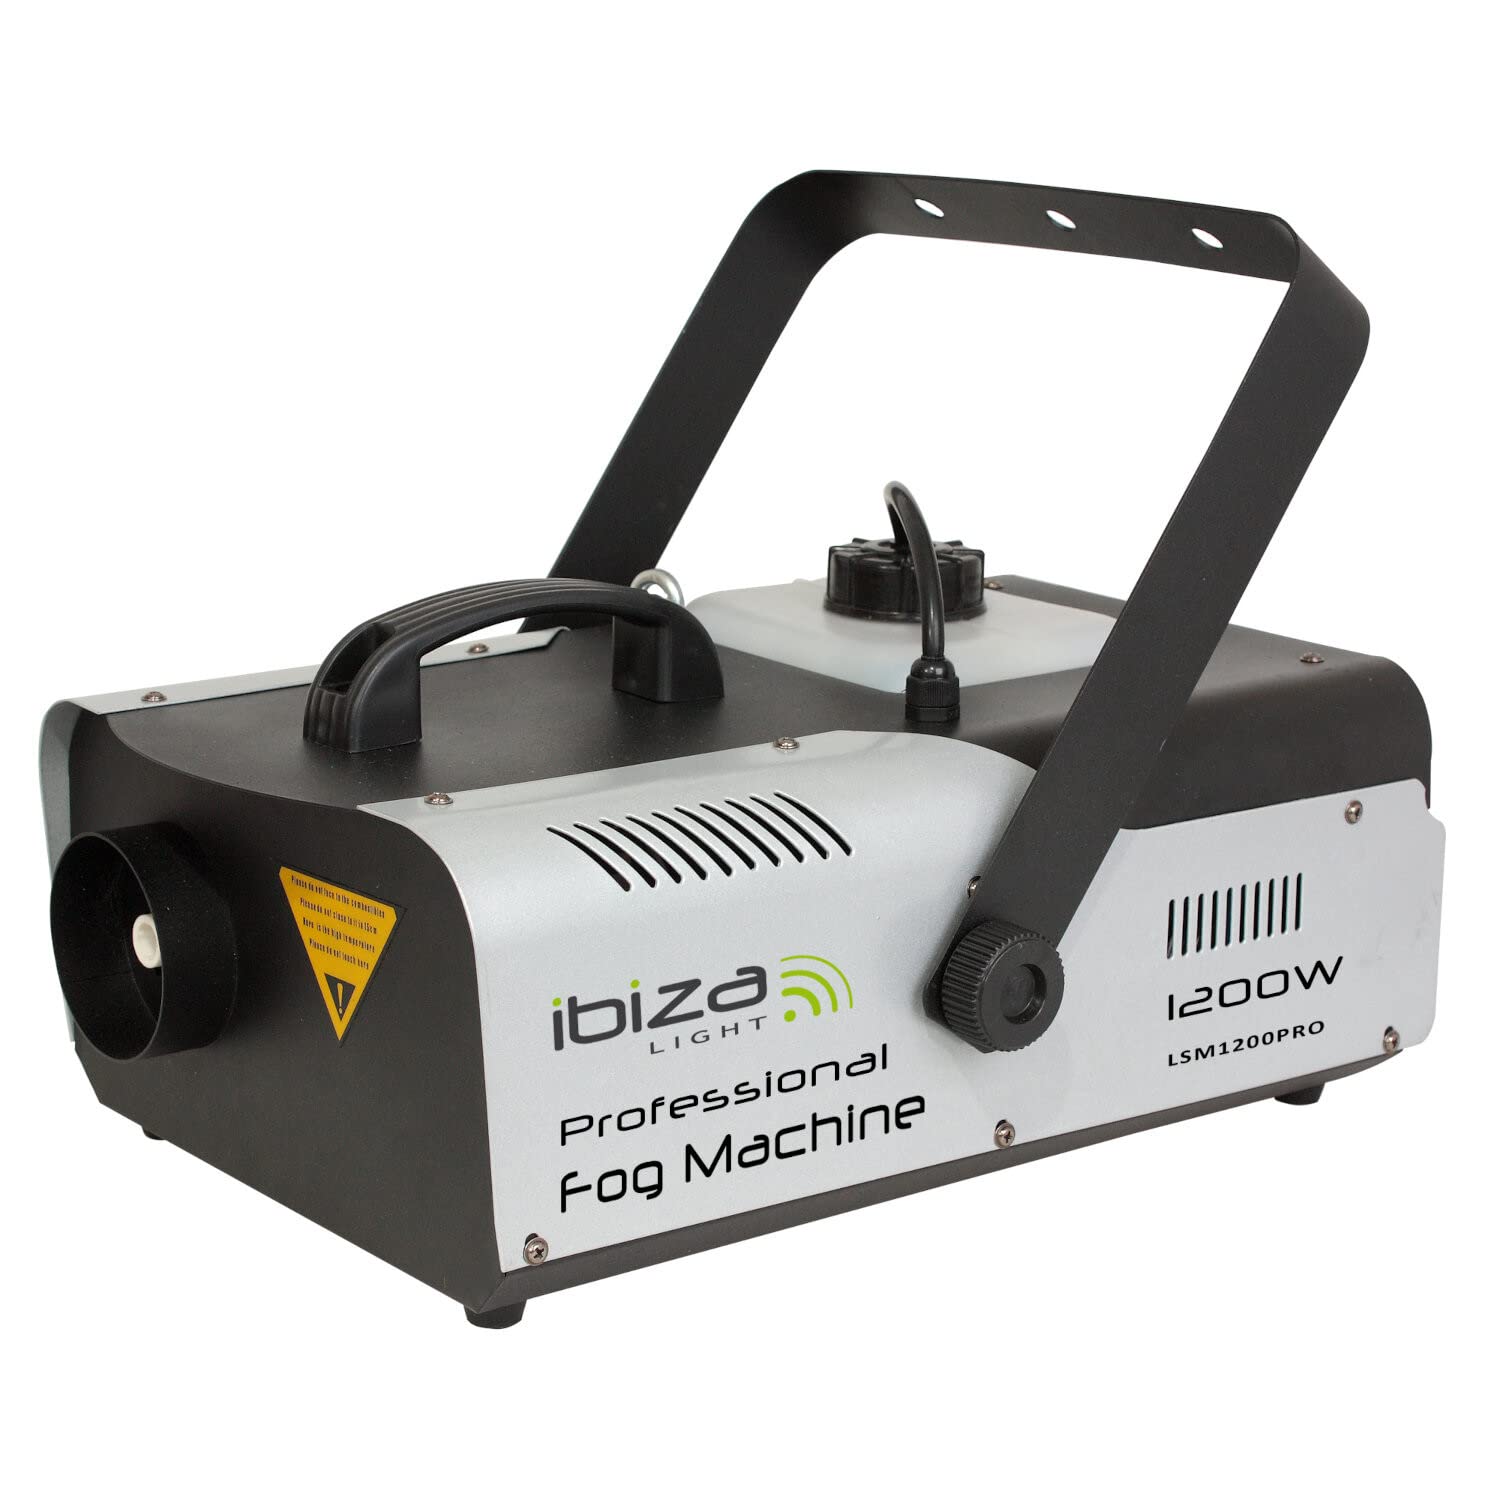 Ibiza - LSM1200PRO - Professionelle 1200W Nebelmaschine programmierbar mit DMX und Fernsteuerung - Schwarz